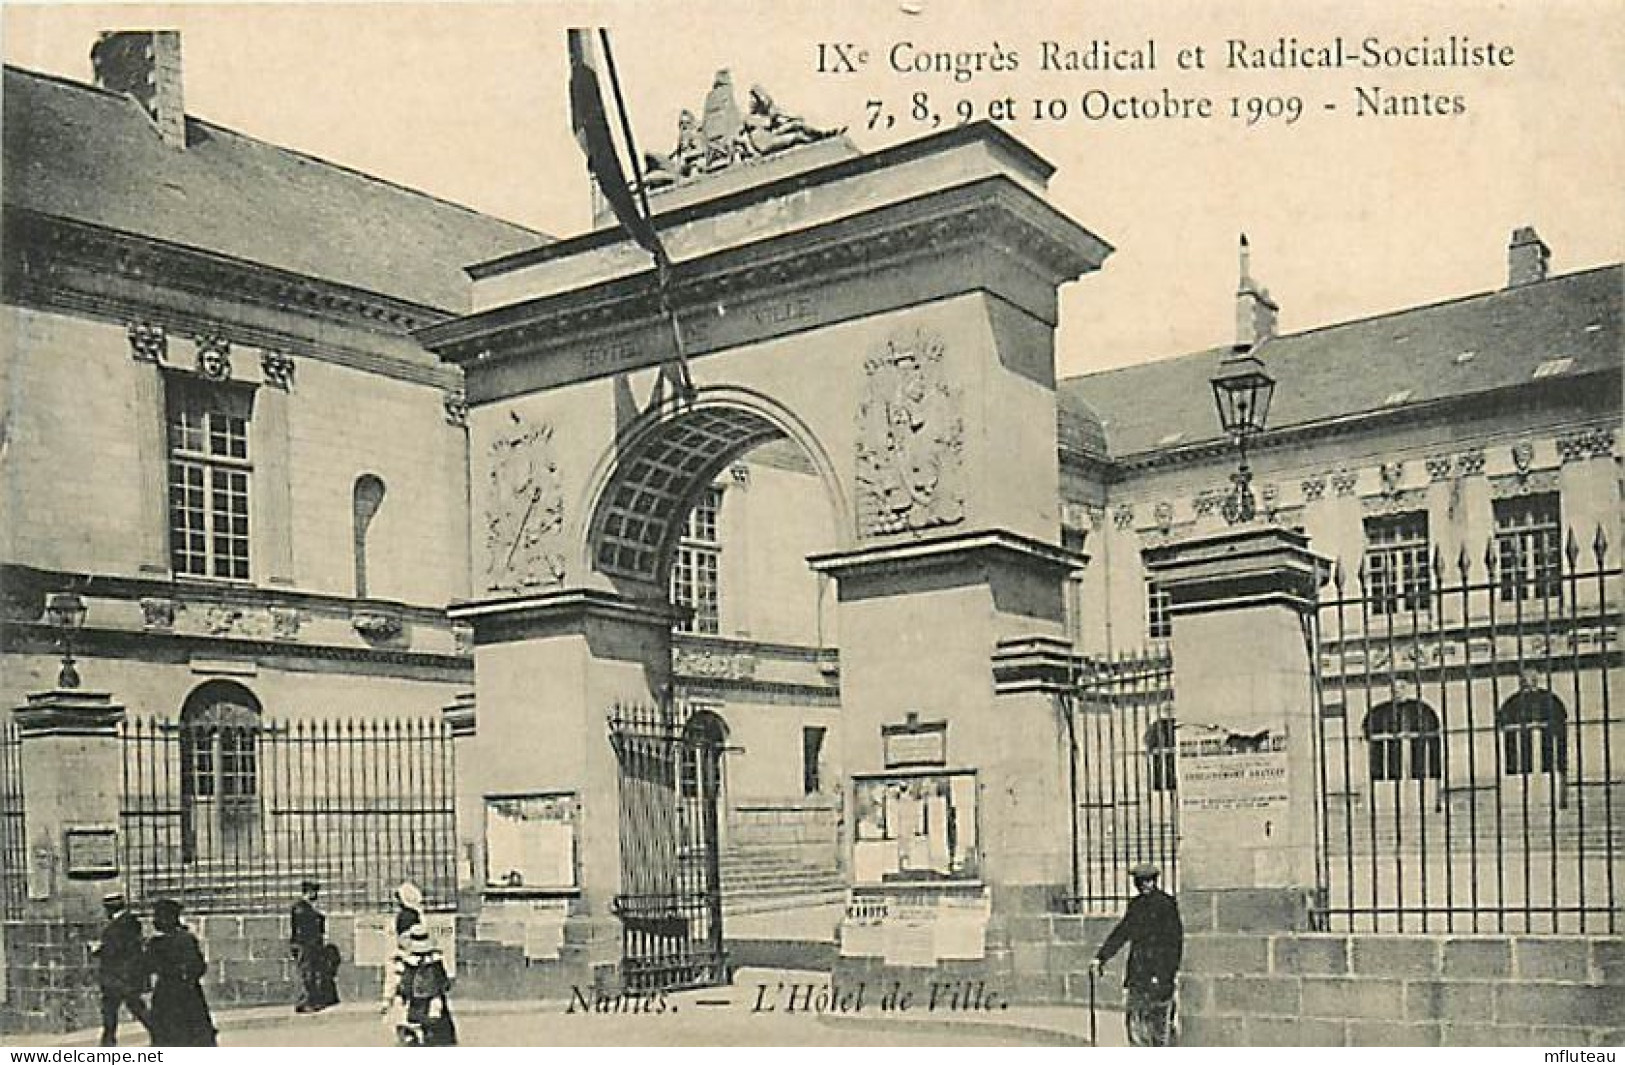 44* NANTES Congres Radical Socialiste 1909 -mairie  RL03,0576 - Nantes